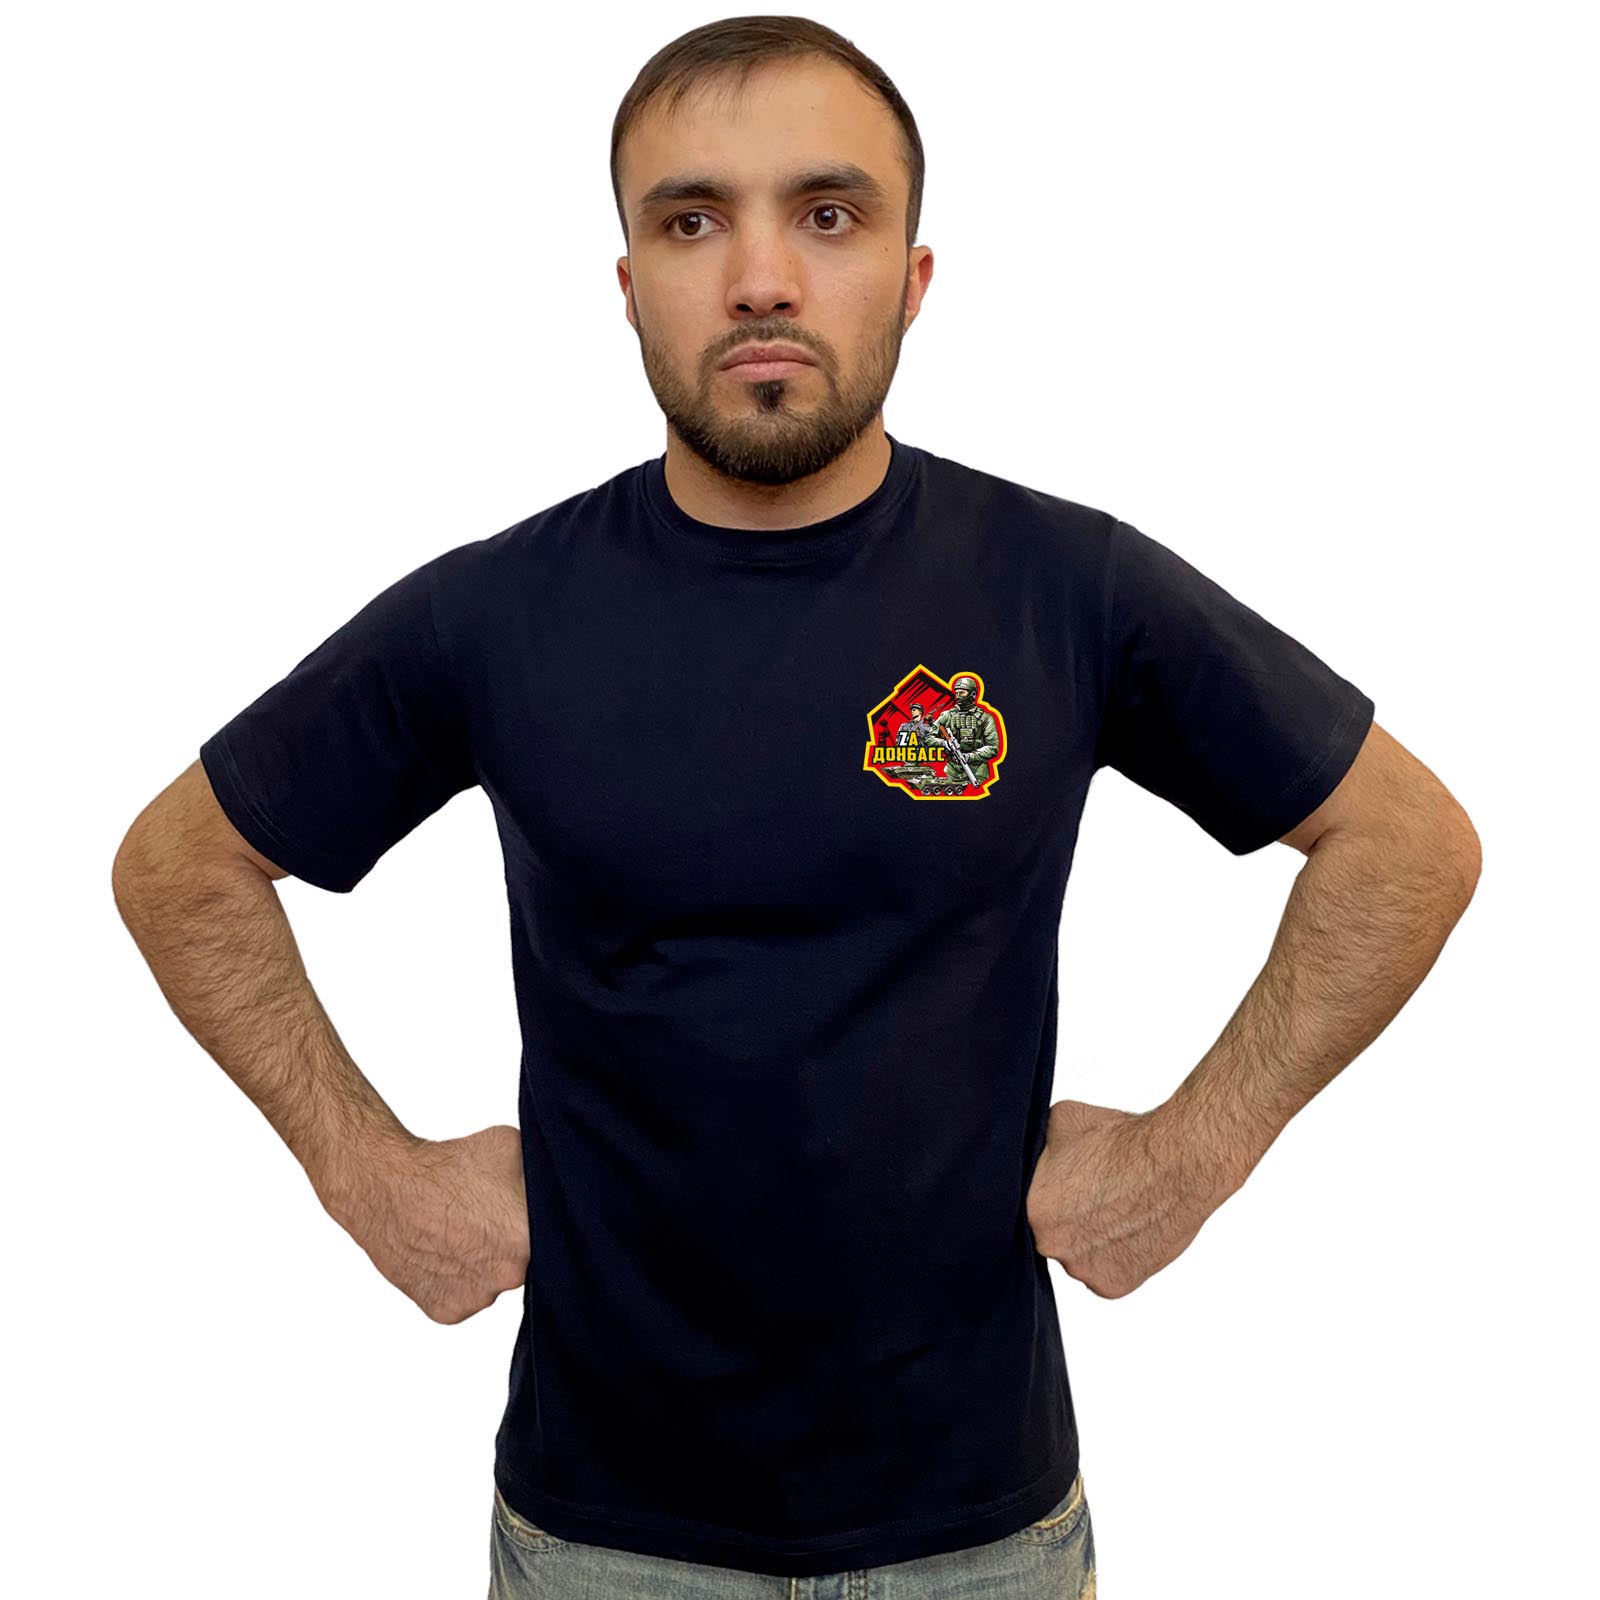 Тёмно-синяя футболка с трансфером "Zа Донбасс"